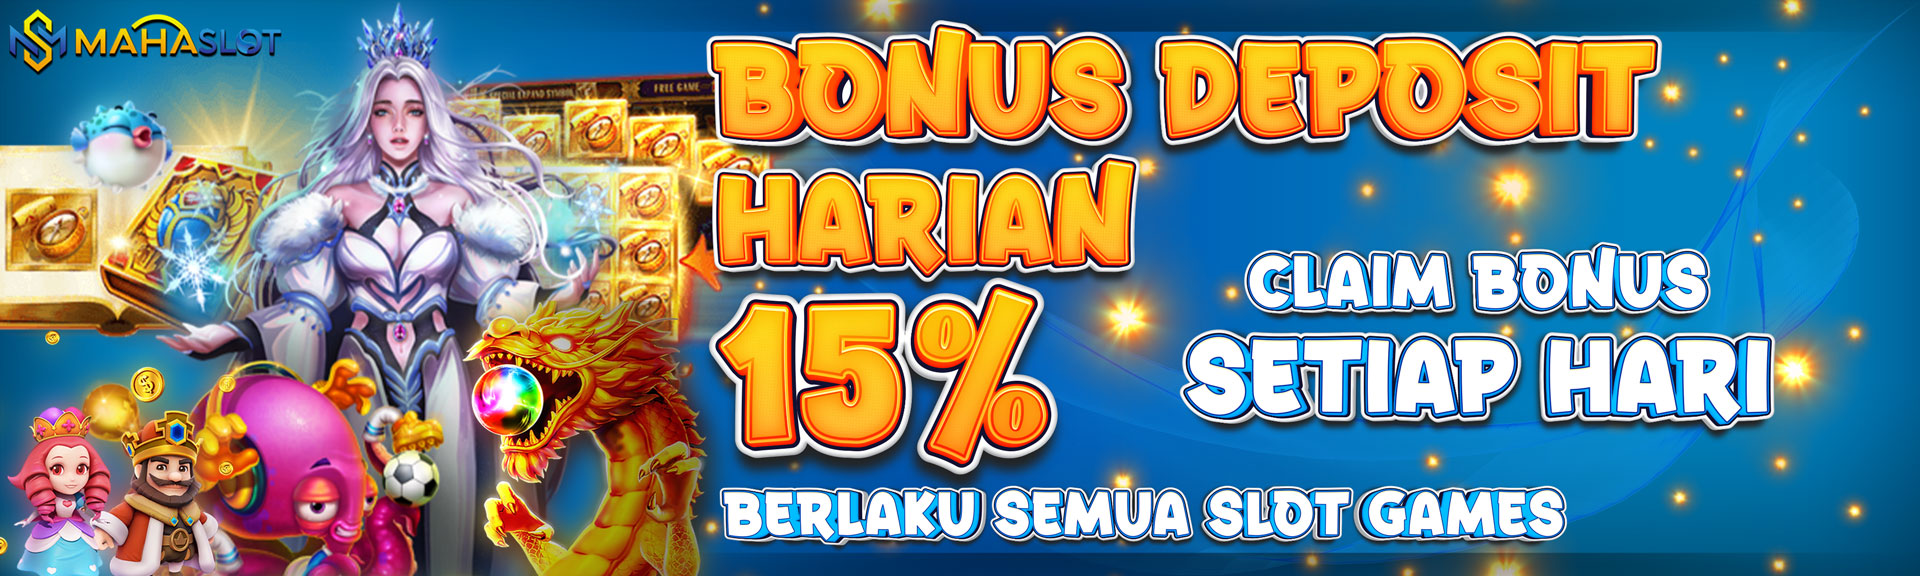 Bonus Deposit Harian 15%